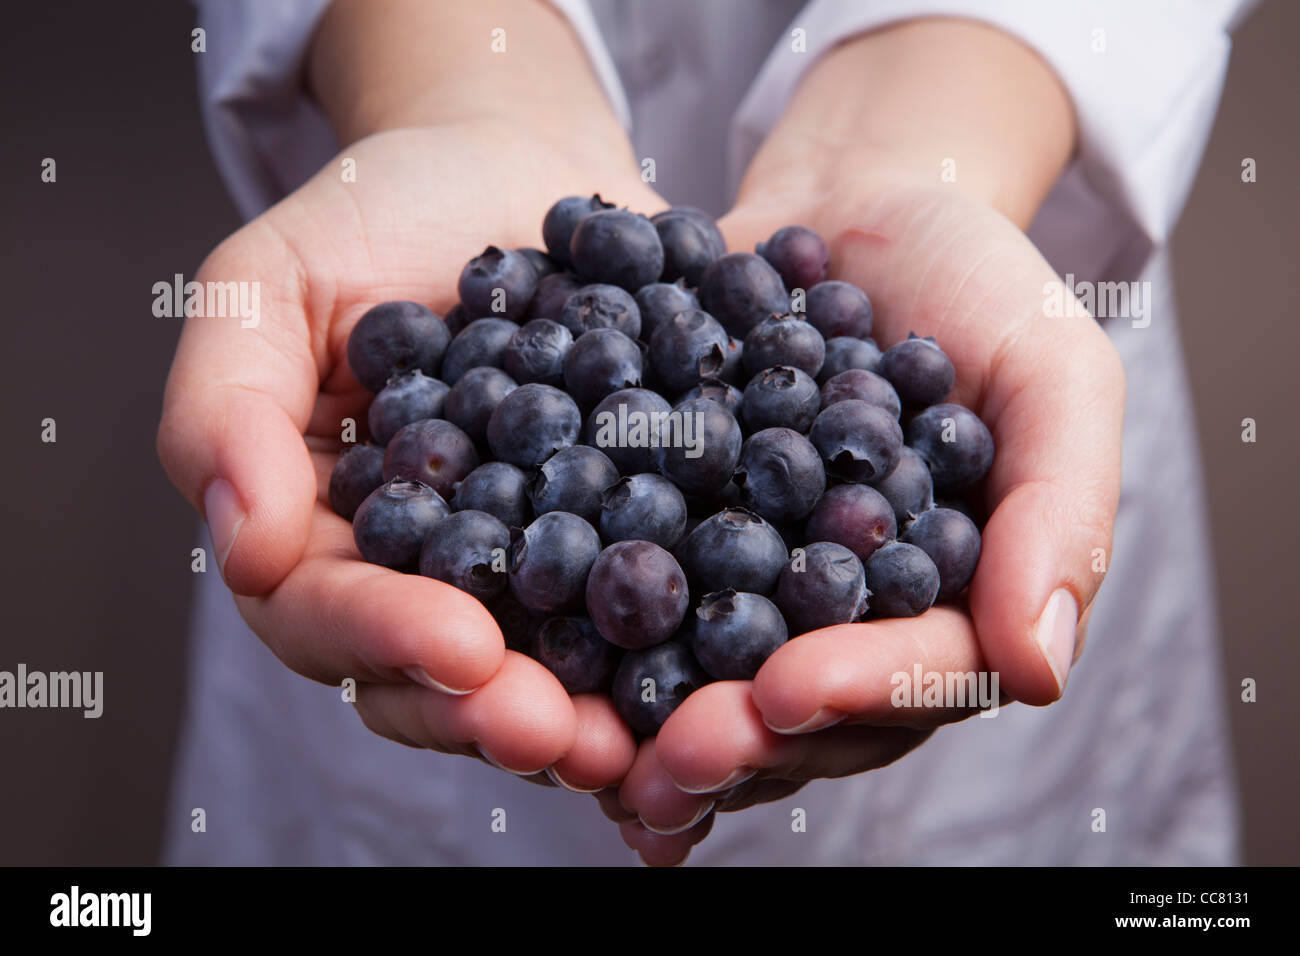 Blueberries-Vaccinium corymbosum Stock Photo